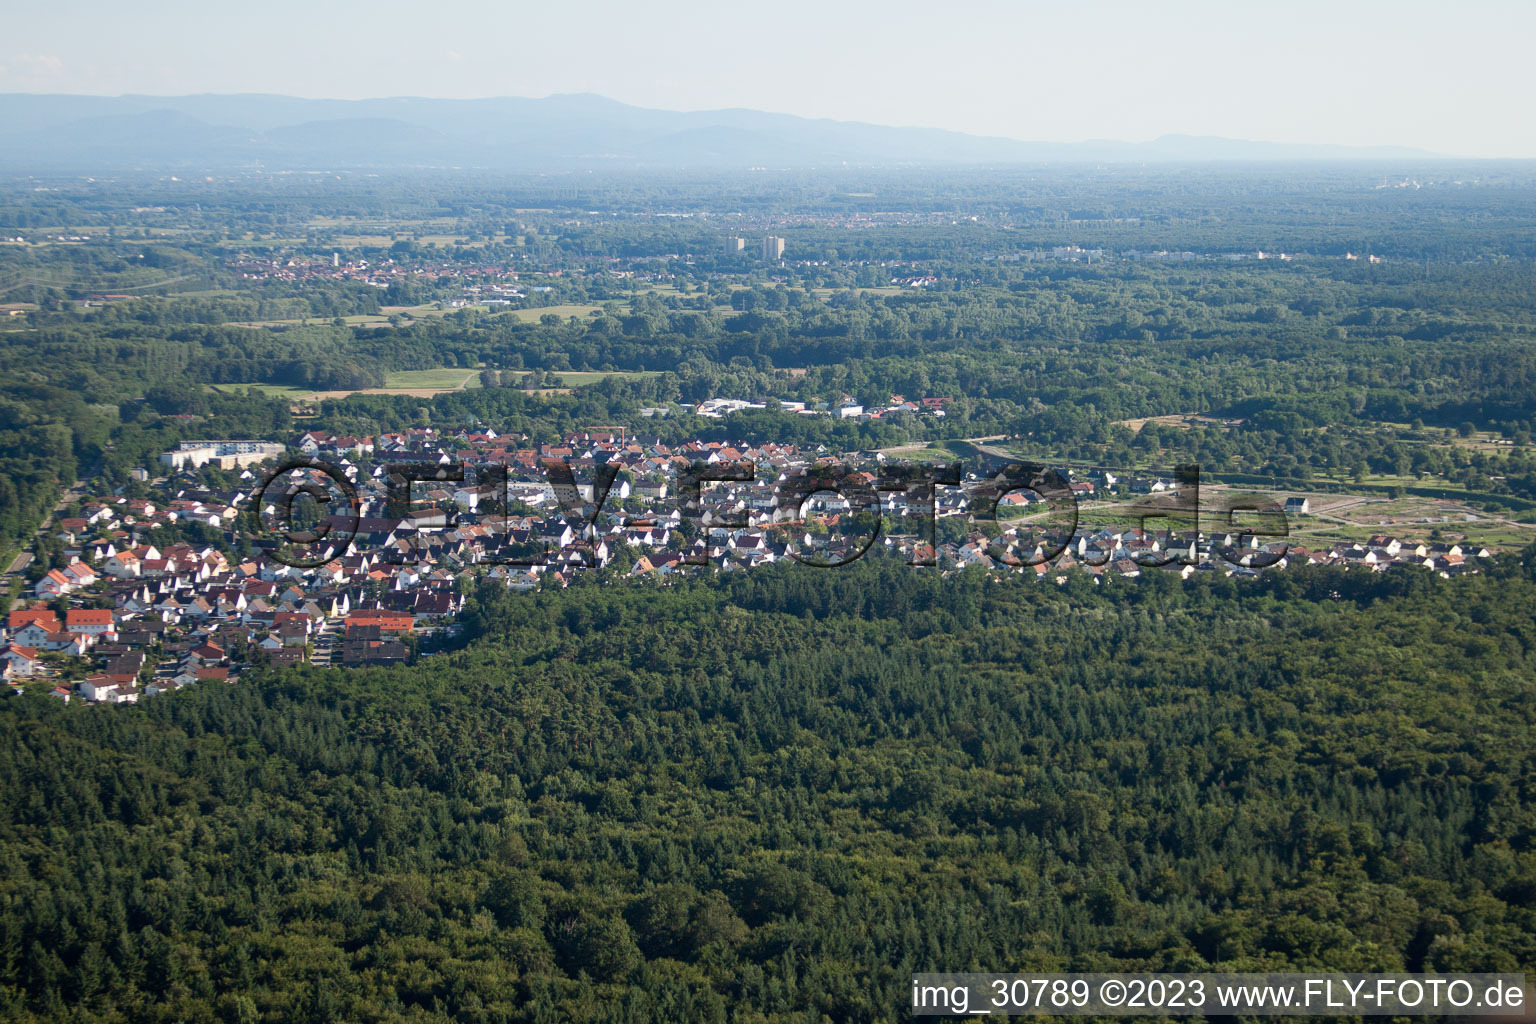 Luftbild von Jockgrim von Norden im Bundesland Rheinland-Pfalz, Deutschland